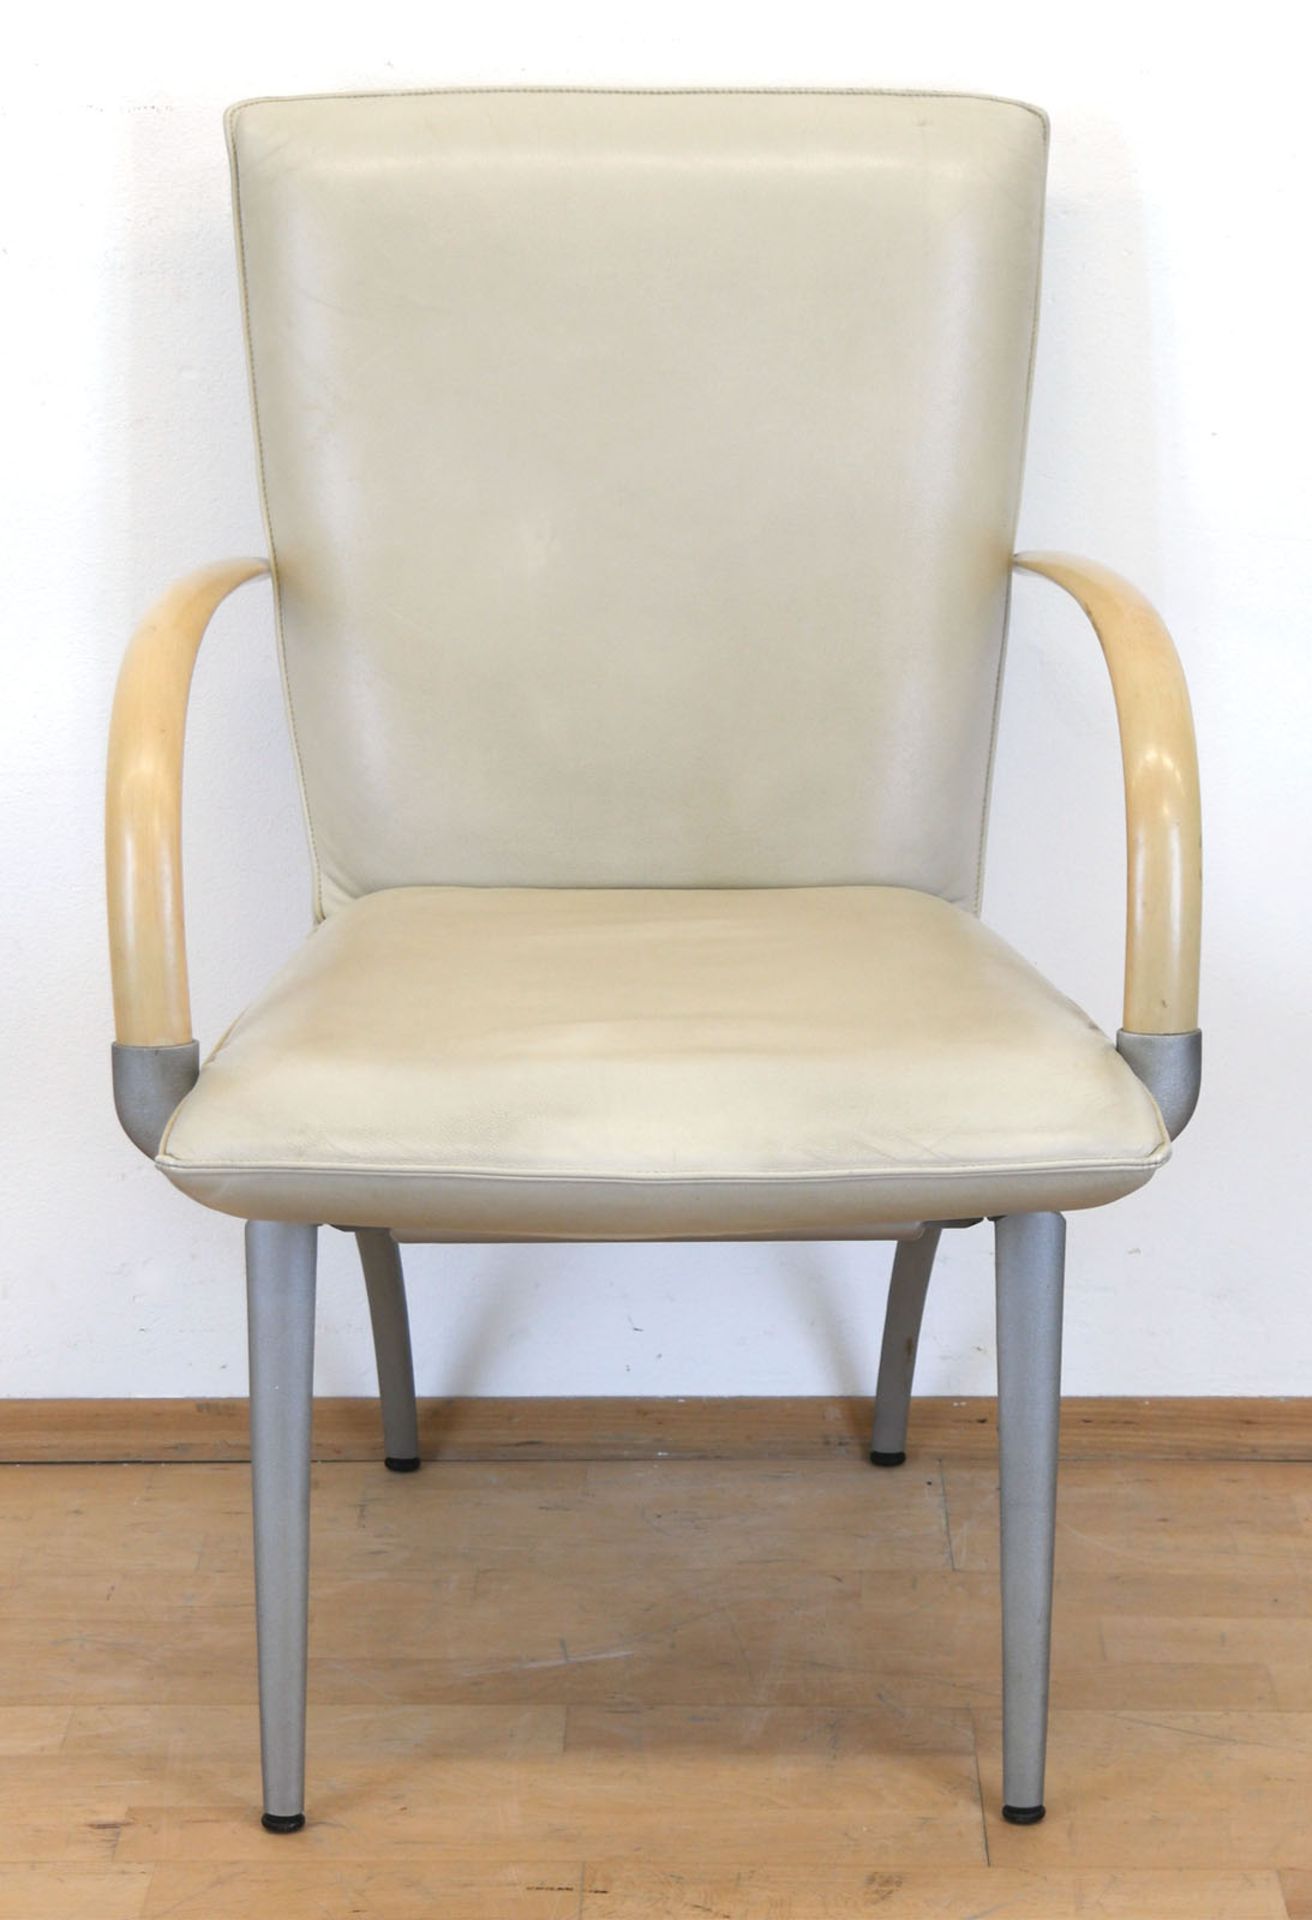 Design-Armlehnstuhl, Entw. Rolf Benz, Metallfußgestell, gepolsterter Sitz und Rückenlehne mit cremf